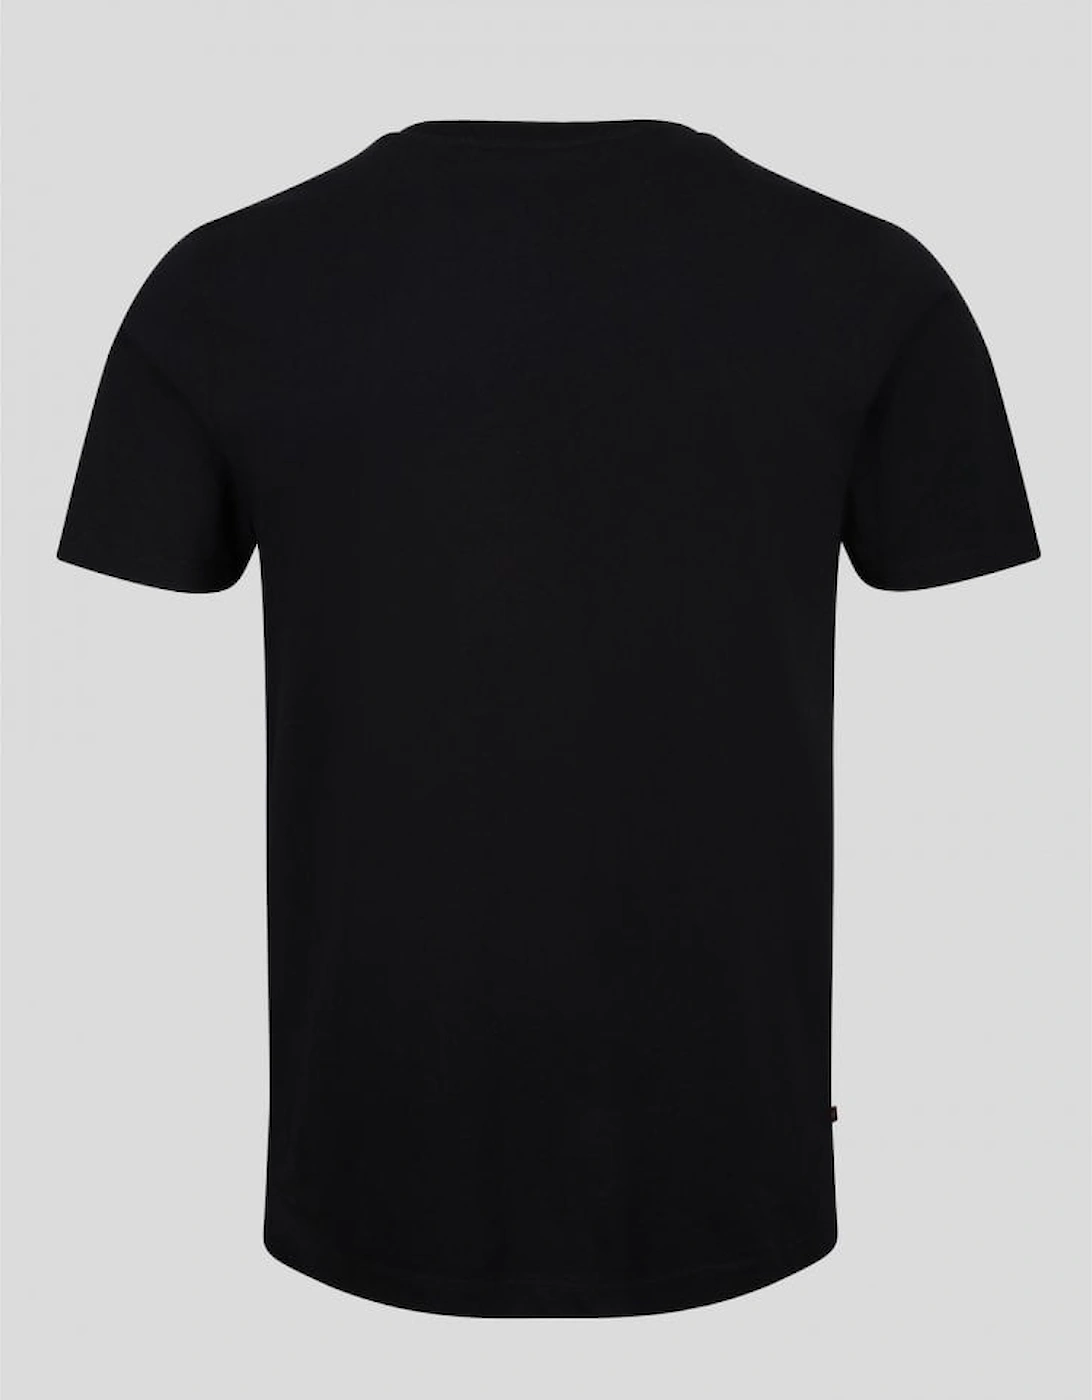 5 Oclock shadow printed T-Shirt - Black